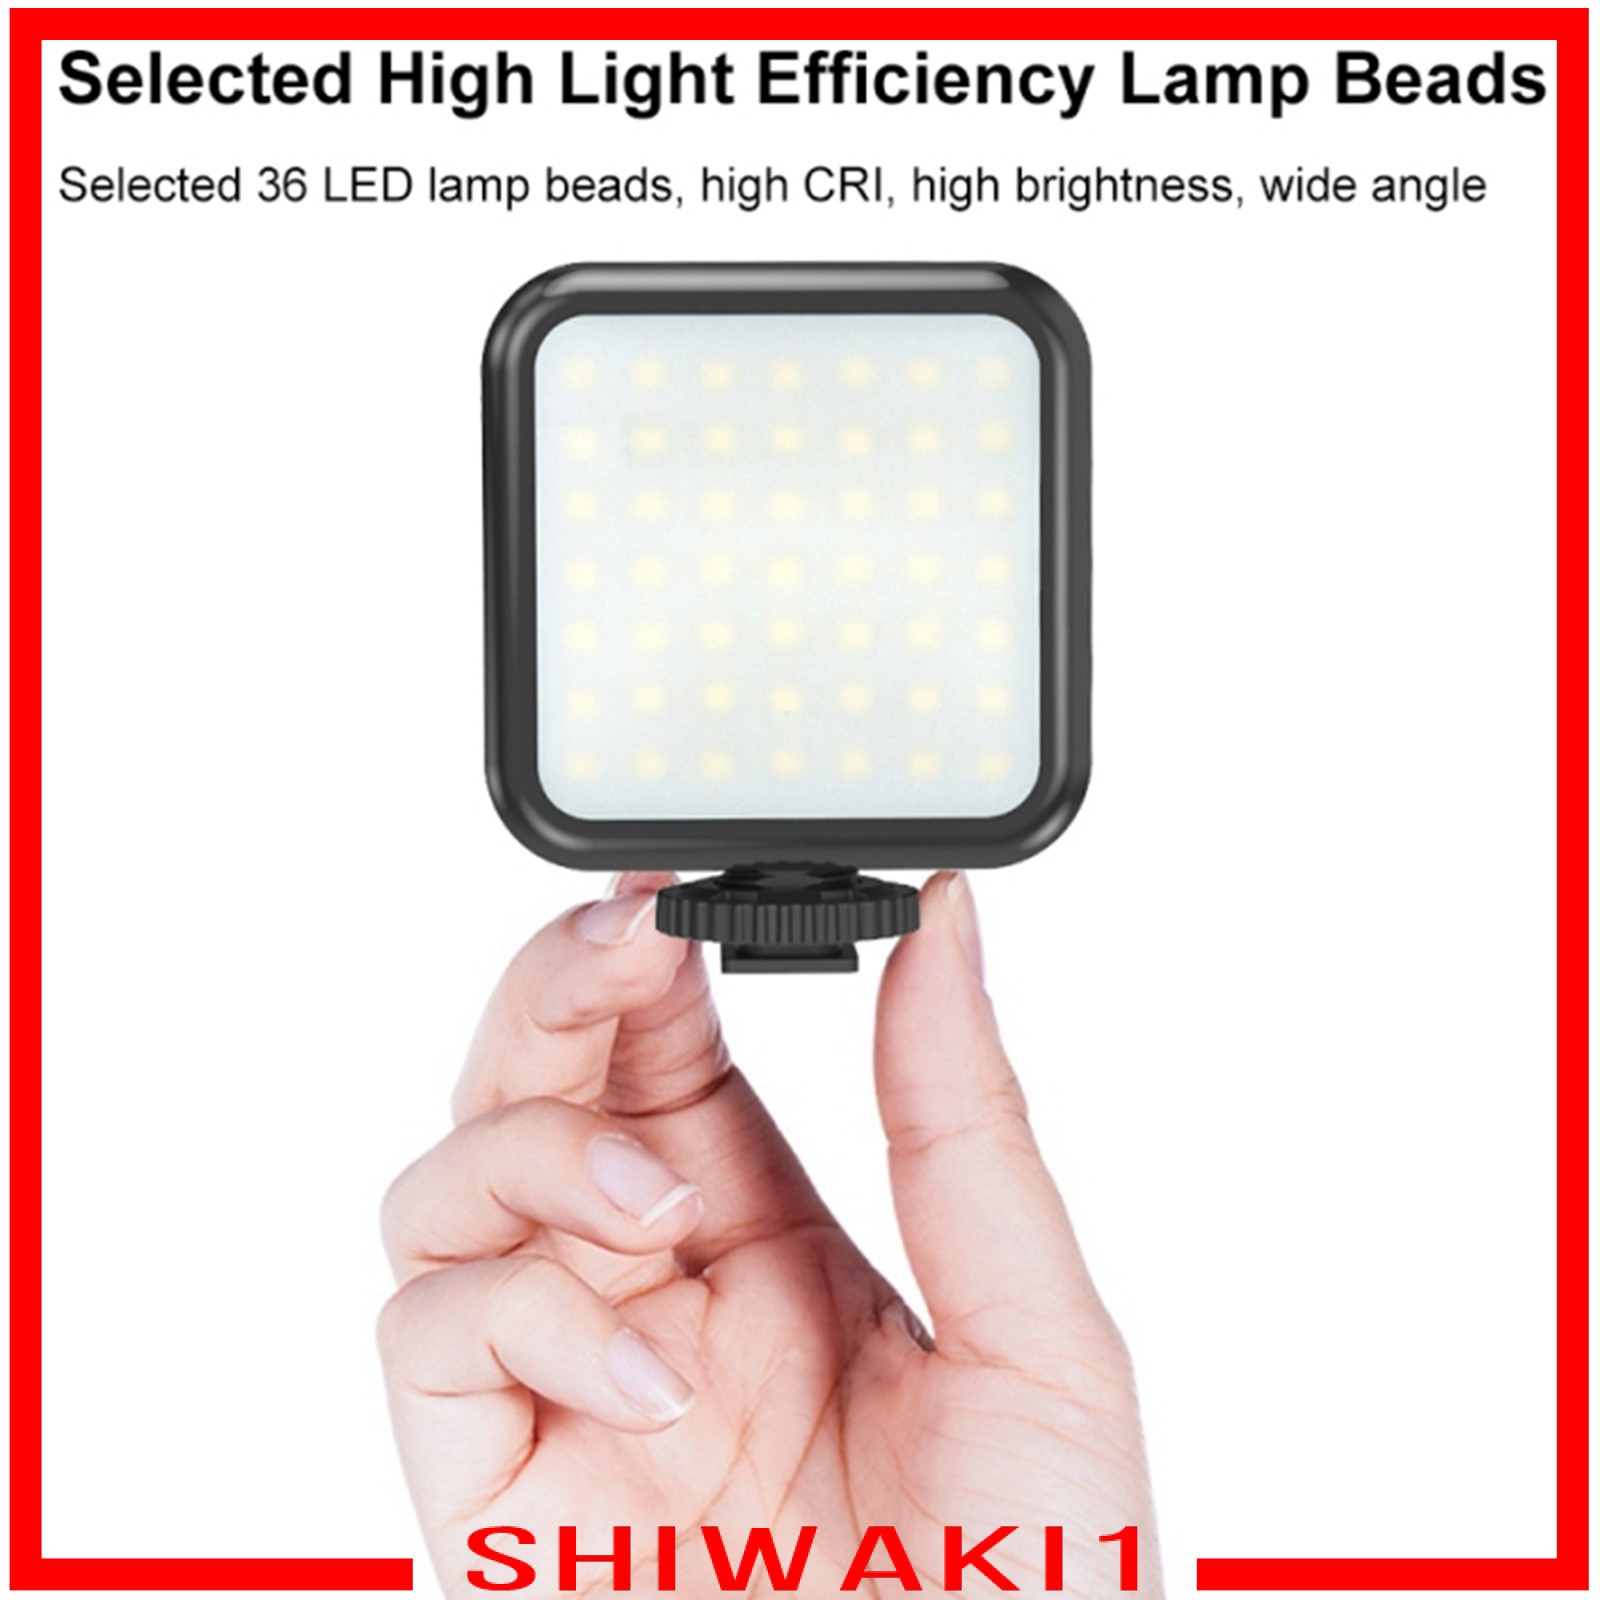 Đèn Led Chiếu Sáng Chụp Ảnh Chuyên Nghiệp Shiwaki1